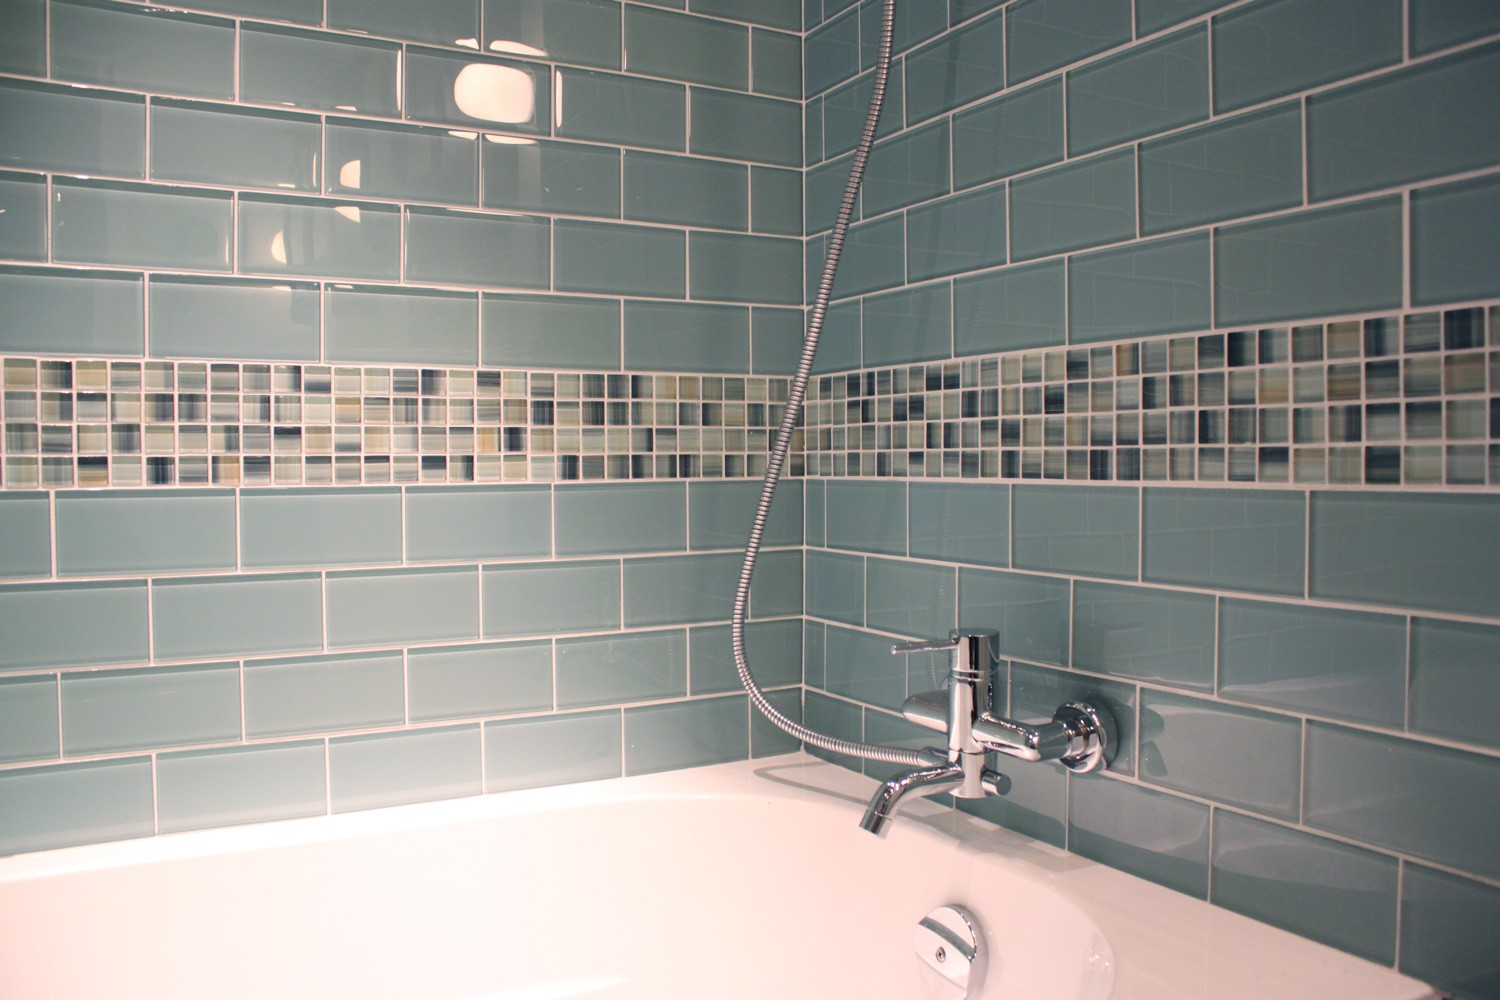 Укладка плитки ванная комната стены. Плитка в разбежку в ванной. Укладка плитки в ванной. Плитка для ванной комнаты. Бордюр из мозаики в ванной.